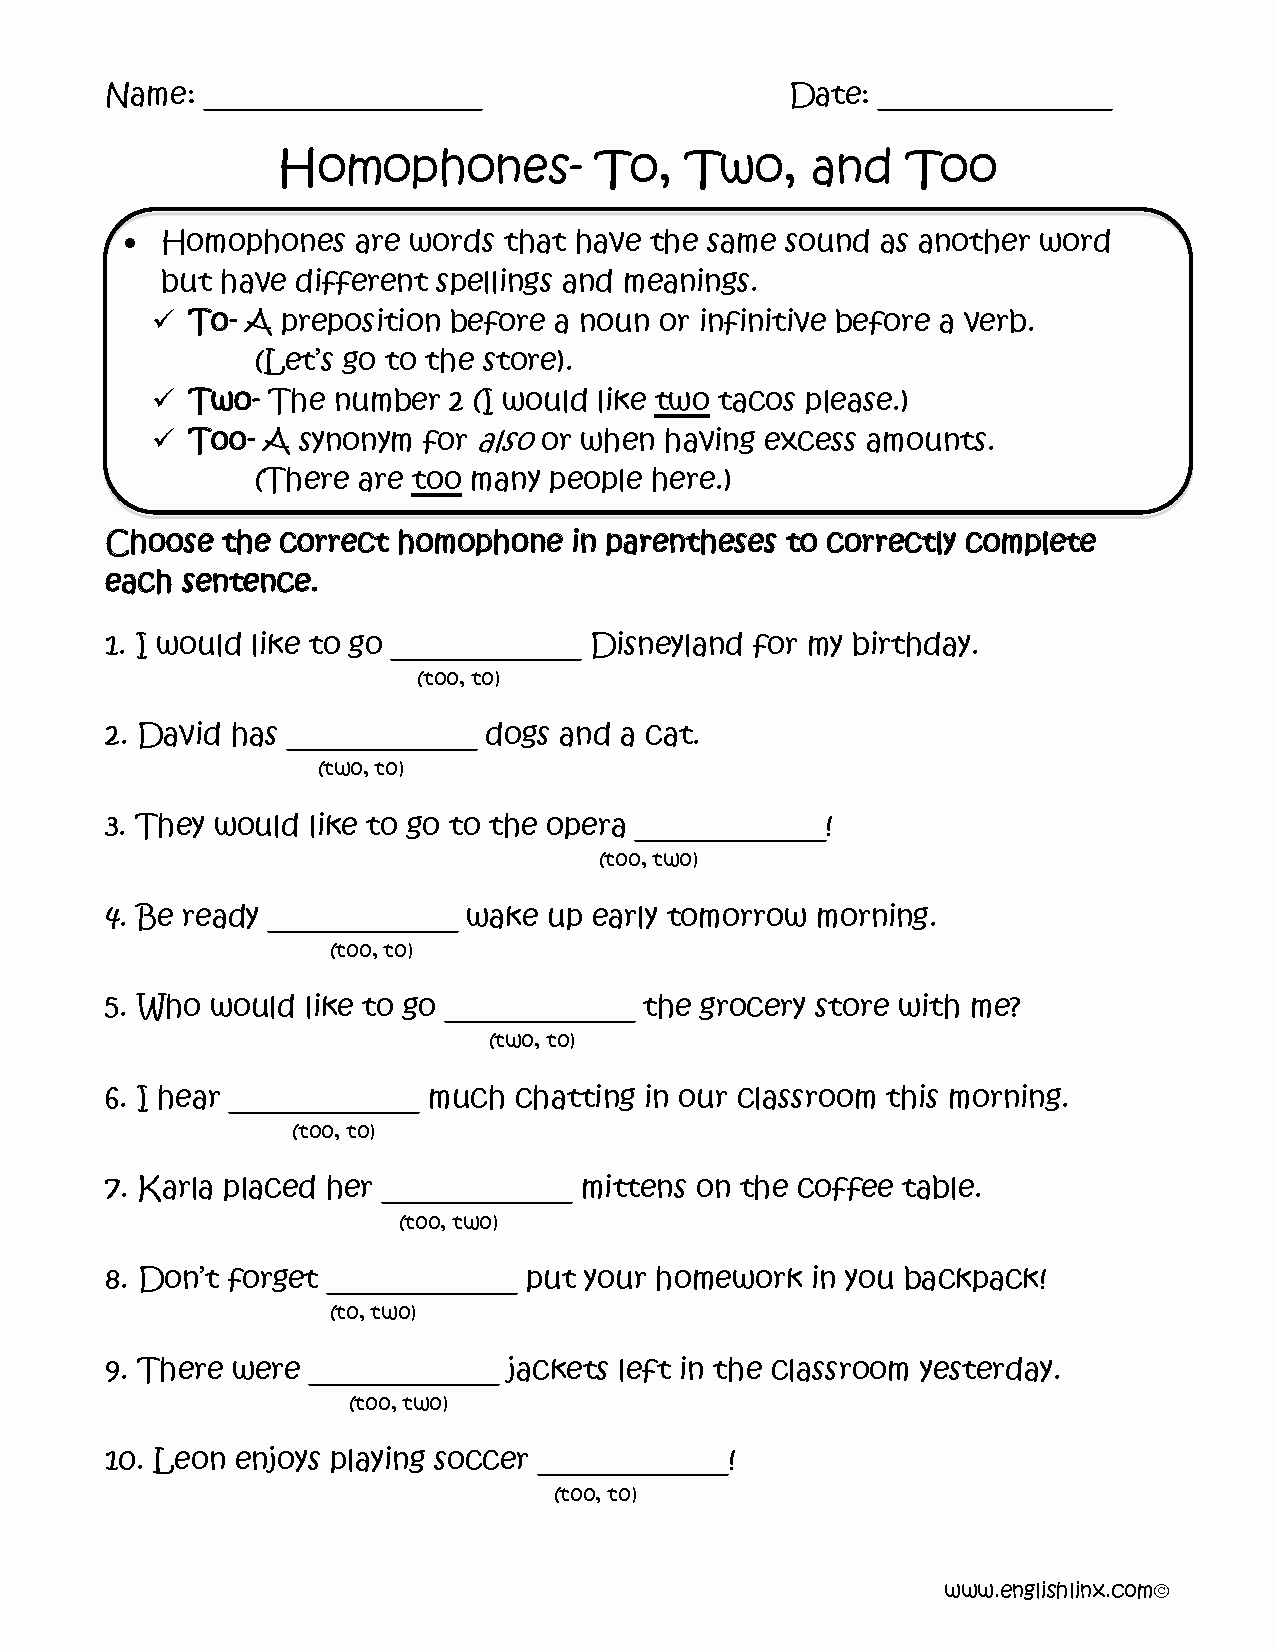 Homophone Worksheets Middle School Lovely Choosing to Two too Homophones Worksheets